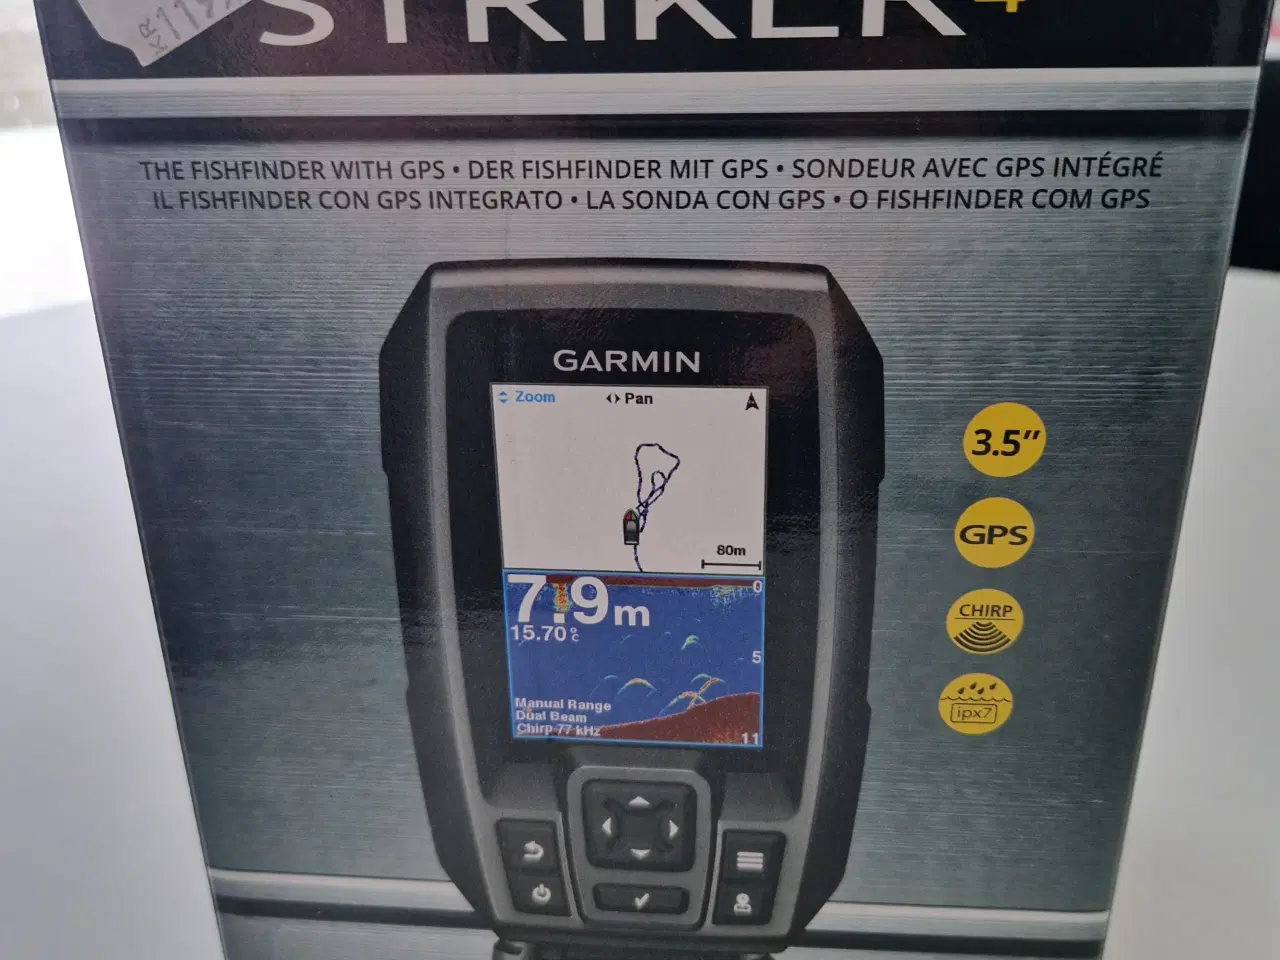 Billede 1 - Garmin ekkolod med GPS incl. transducer.